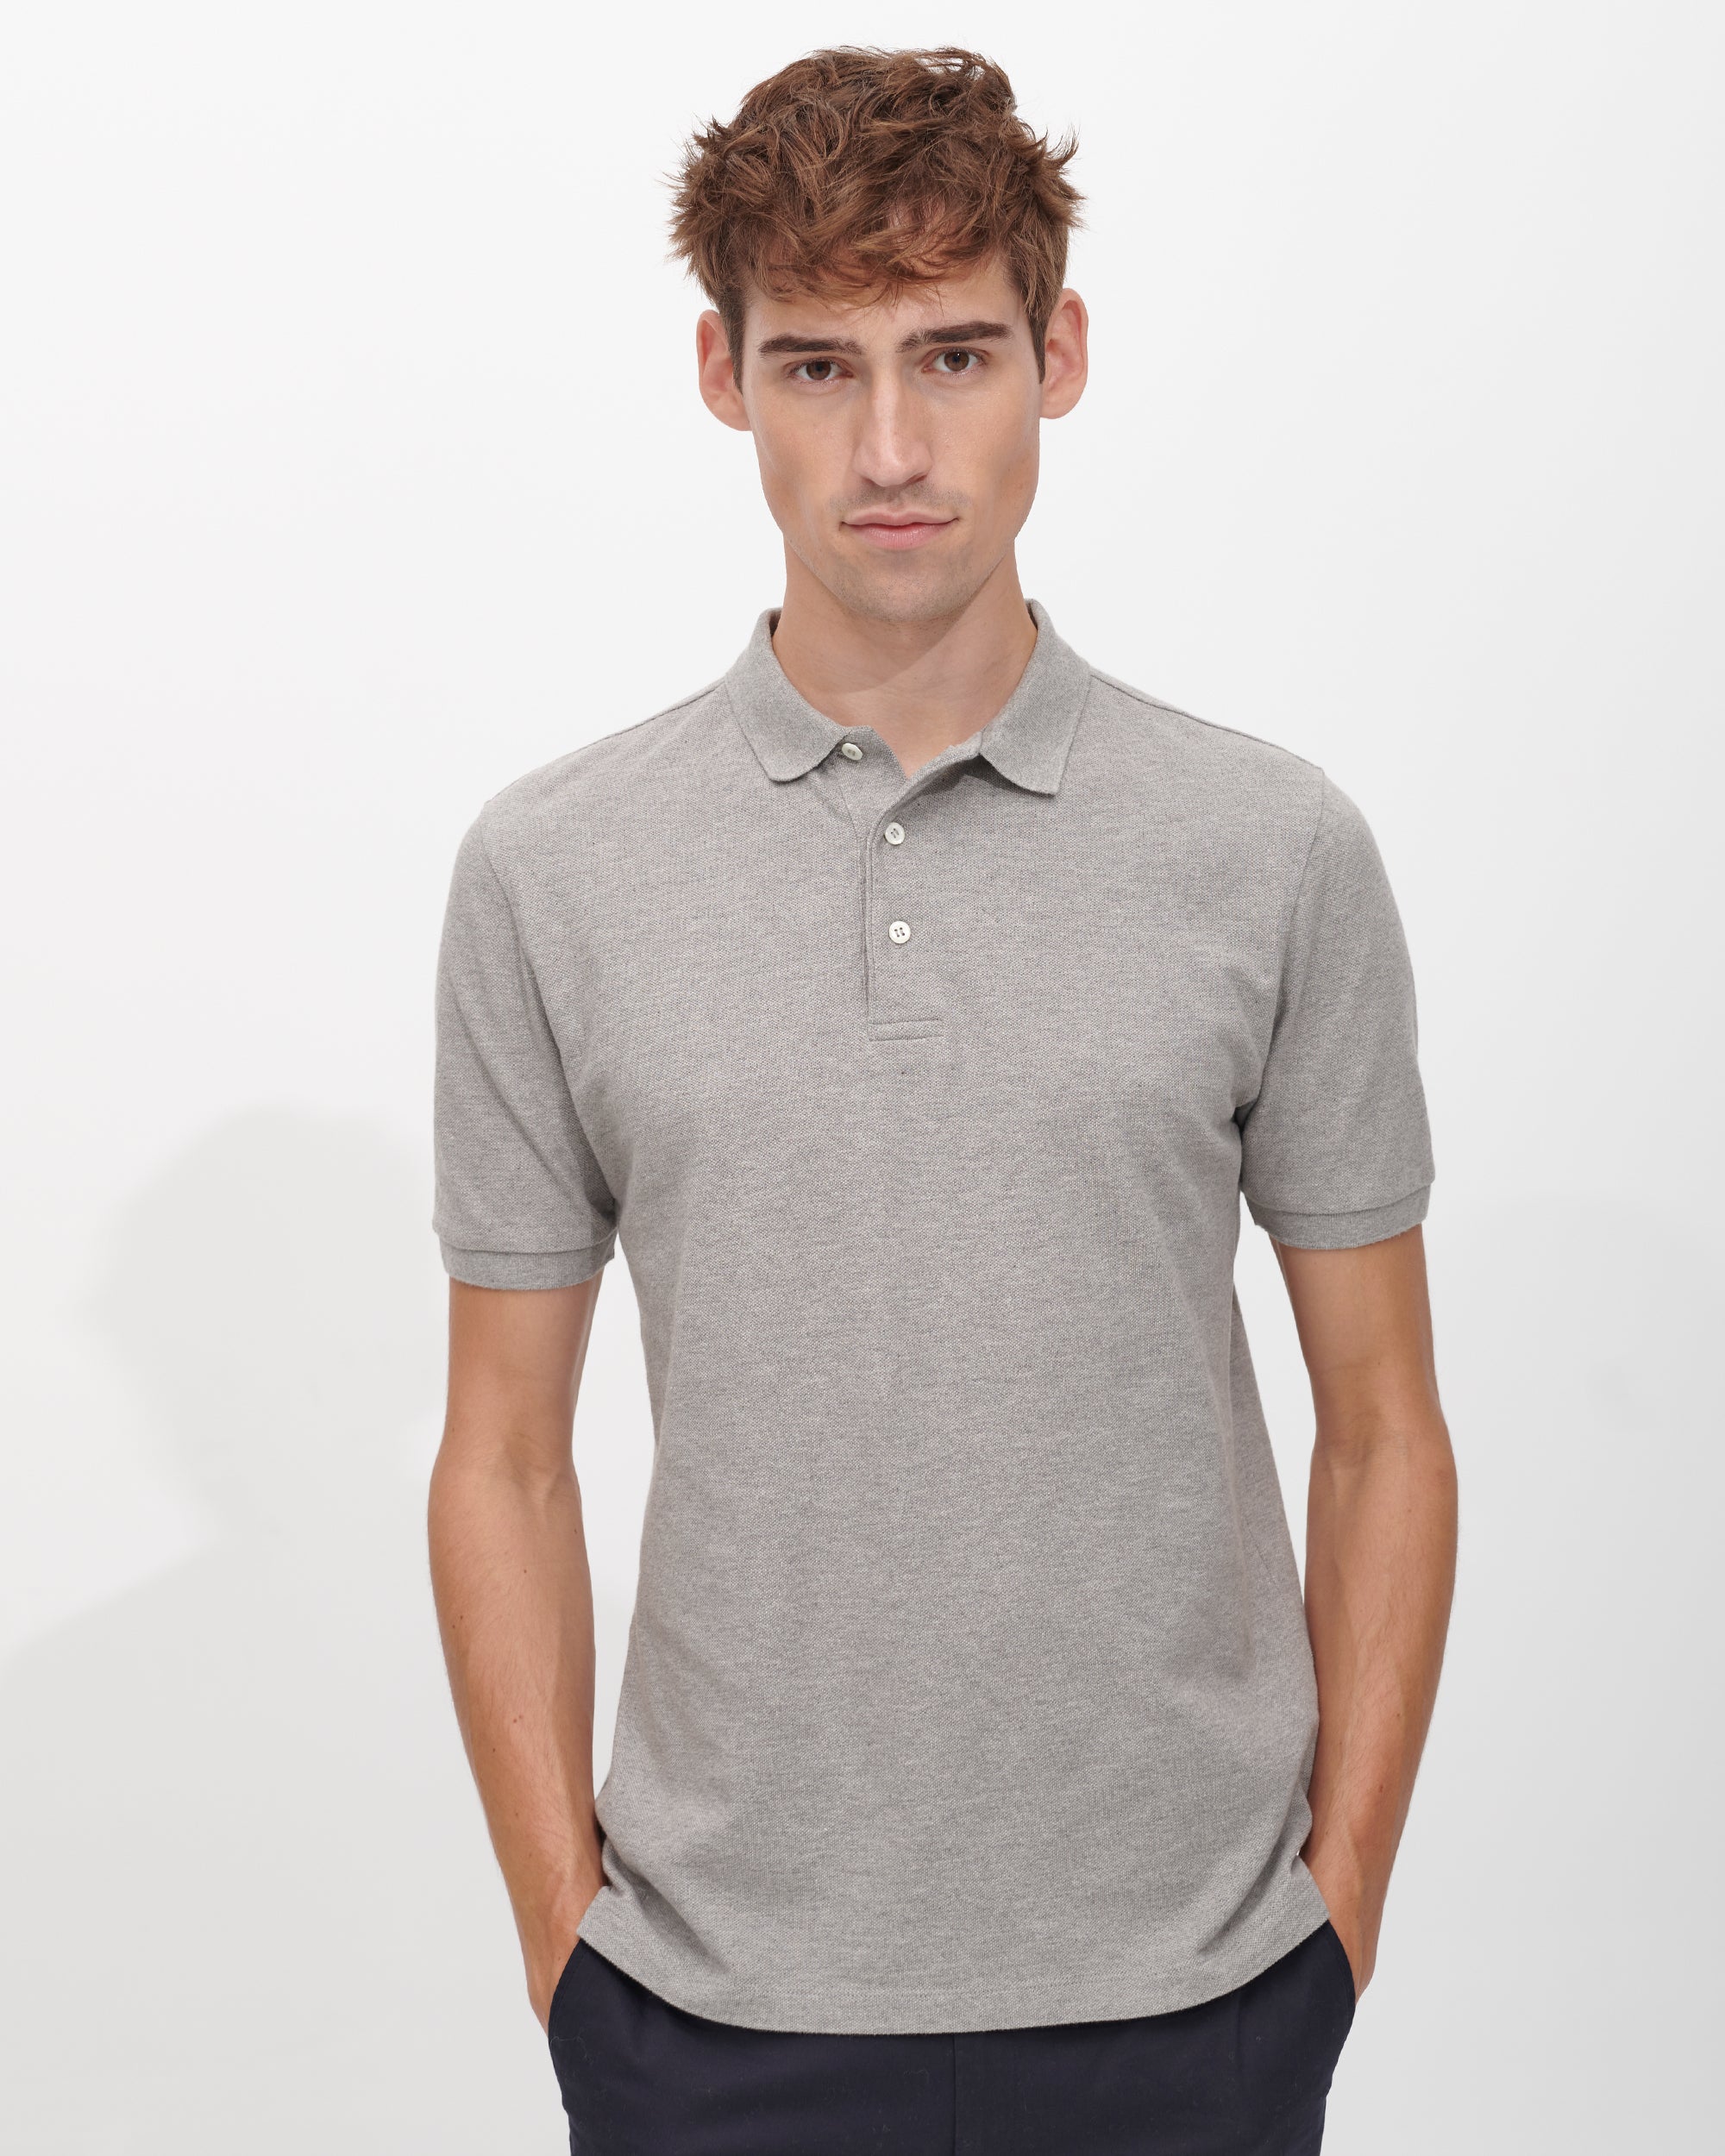 Das Perfekte Poloshirt Premium für Herren in Polohemd Grau 